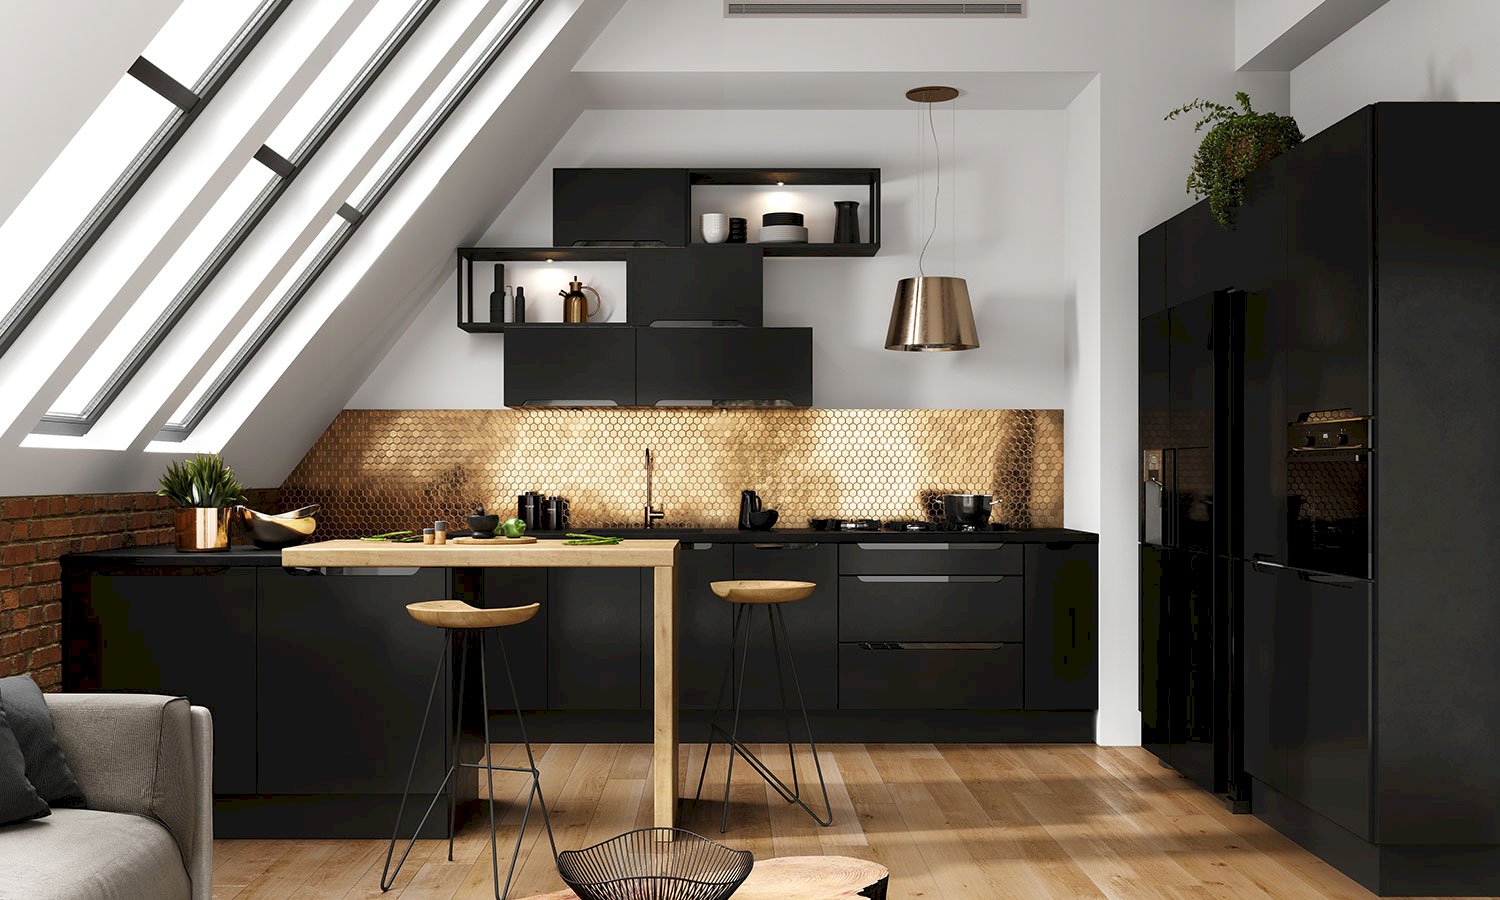 Modna kuchnia: styl loft dla fanów nowoczesnego designu